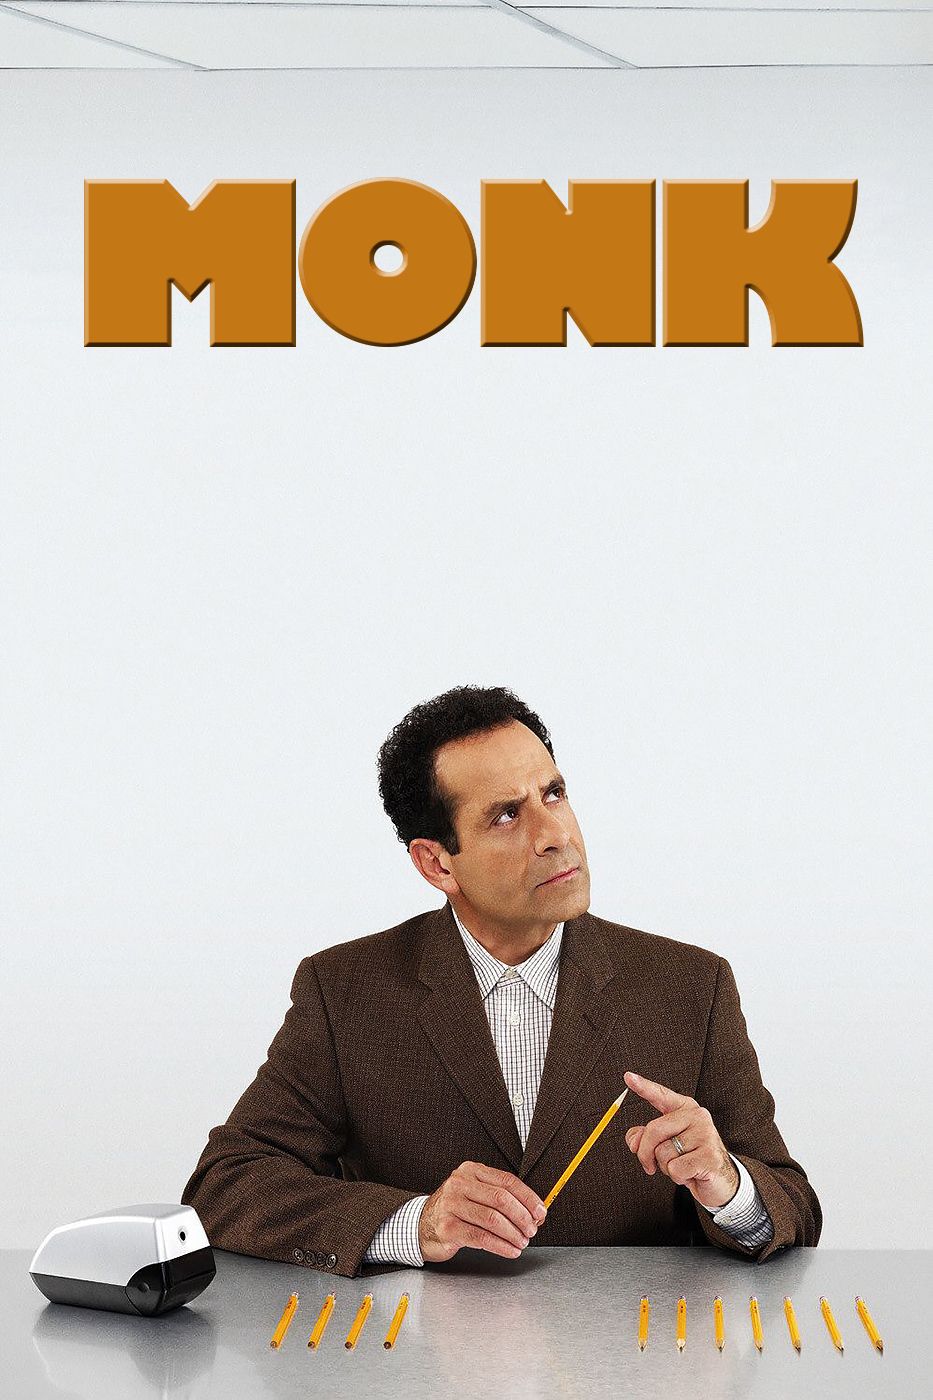 Pôster do programa de TV Monk